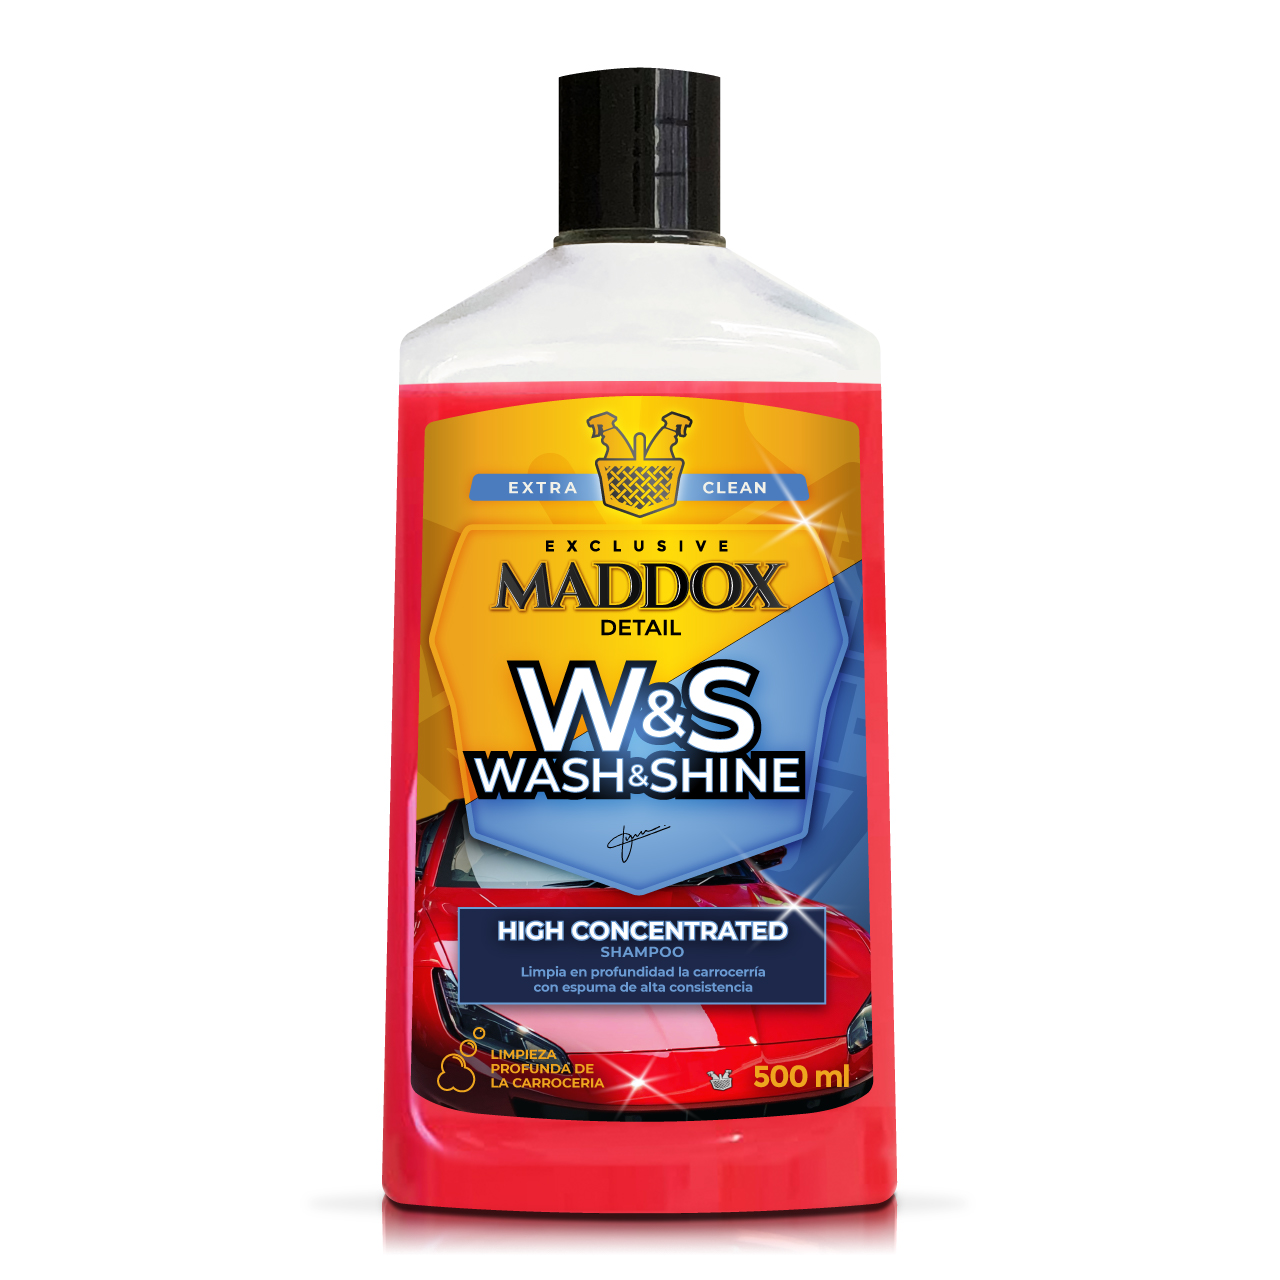 Maddox Detail – Premium Wash & Wax - Champú Auto Secado. Ceras hidrofóbicas  para un Brillo Superior. Sin Necesidad de Secado, Máxima concentración, 500  ml